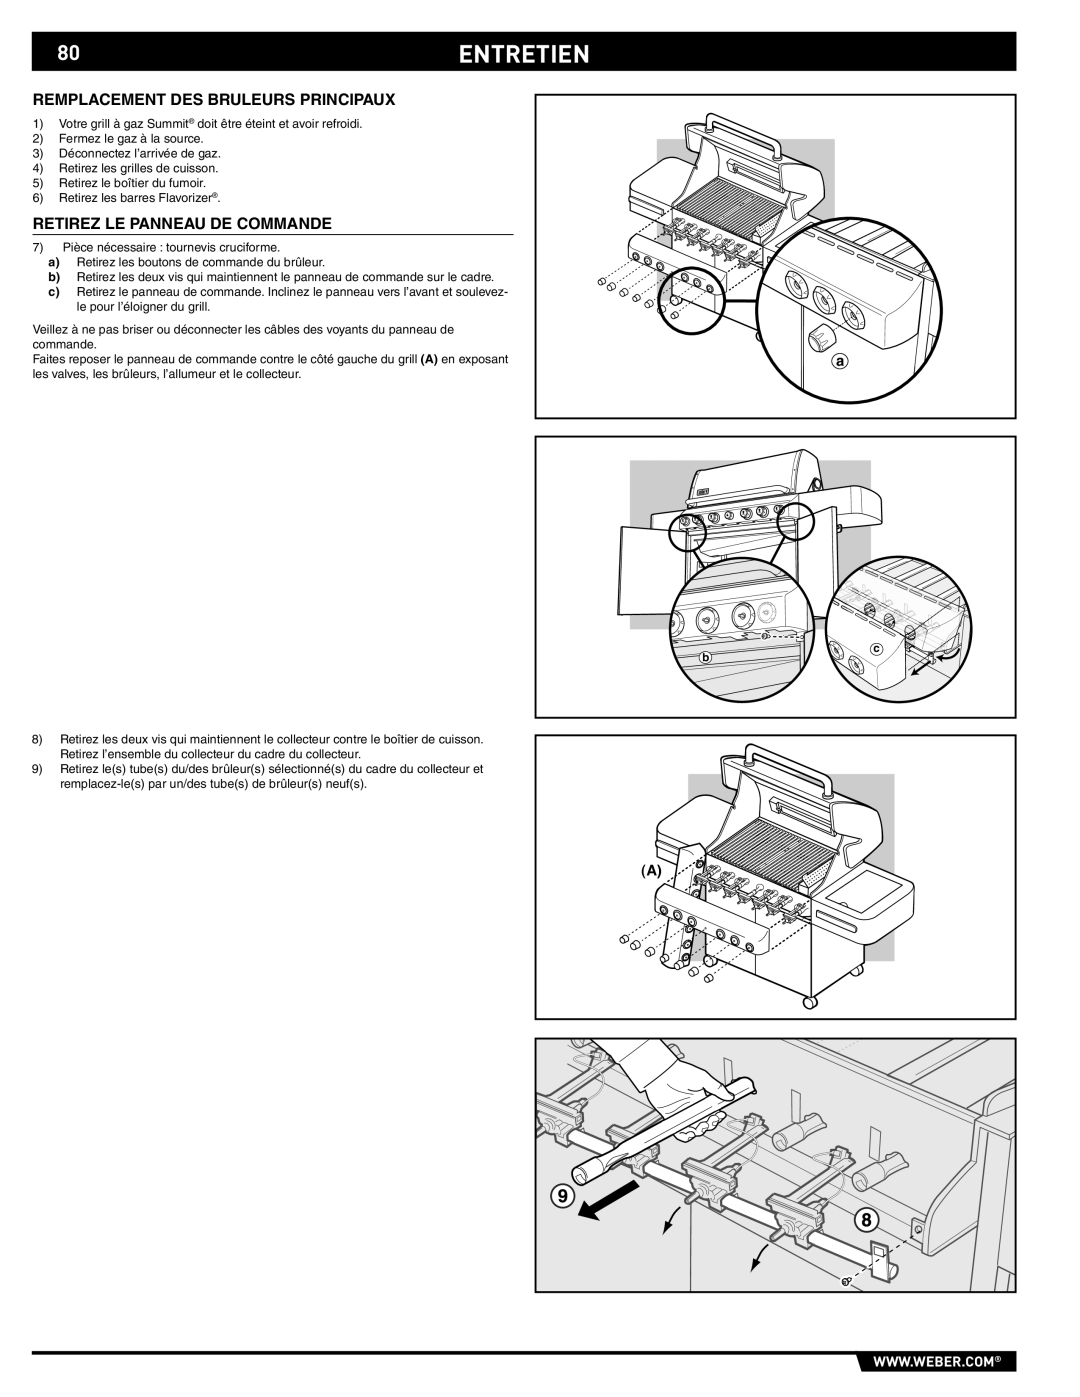 Weber S-470TM manual 80ENTRETIEN, Remplacement Des Bruleurs Principaux, Retirez Le Panneau De Commande 